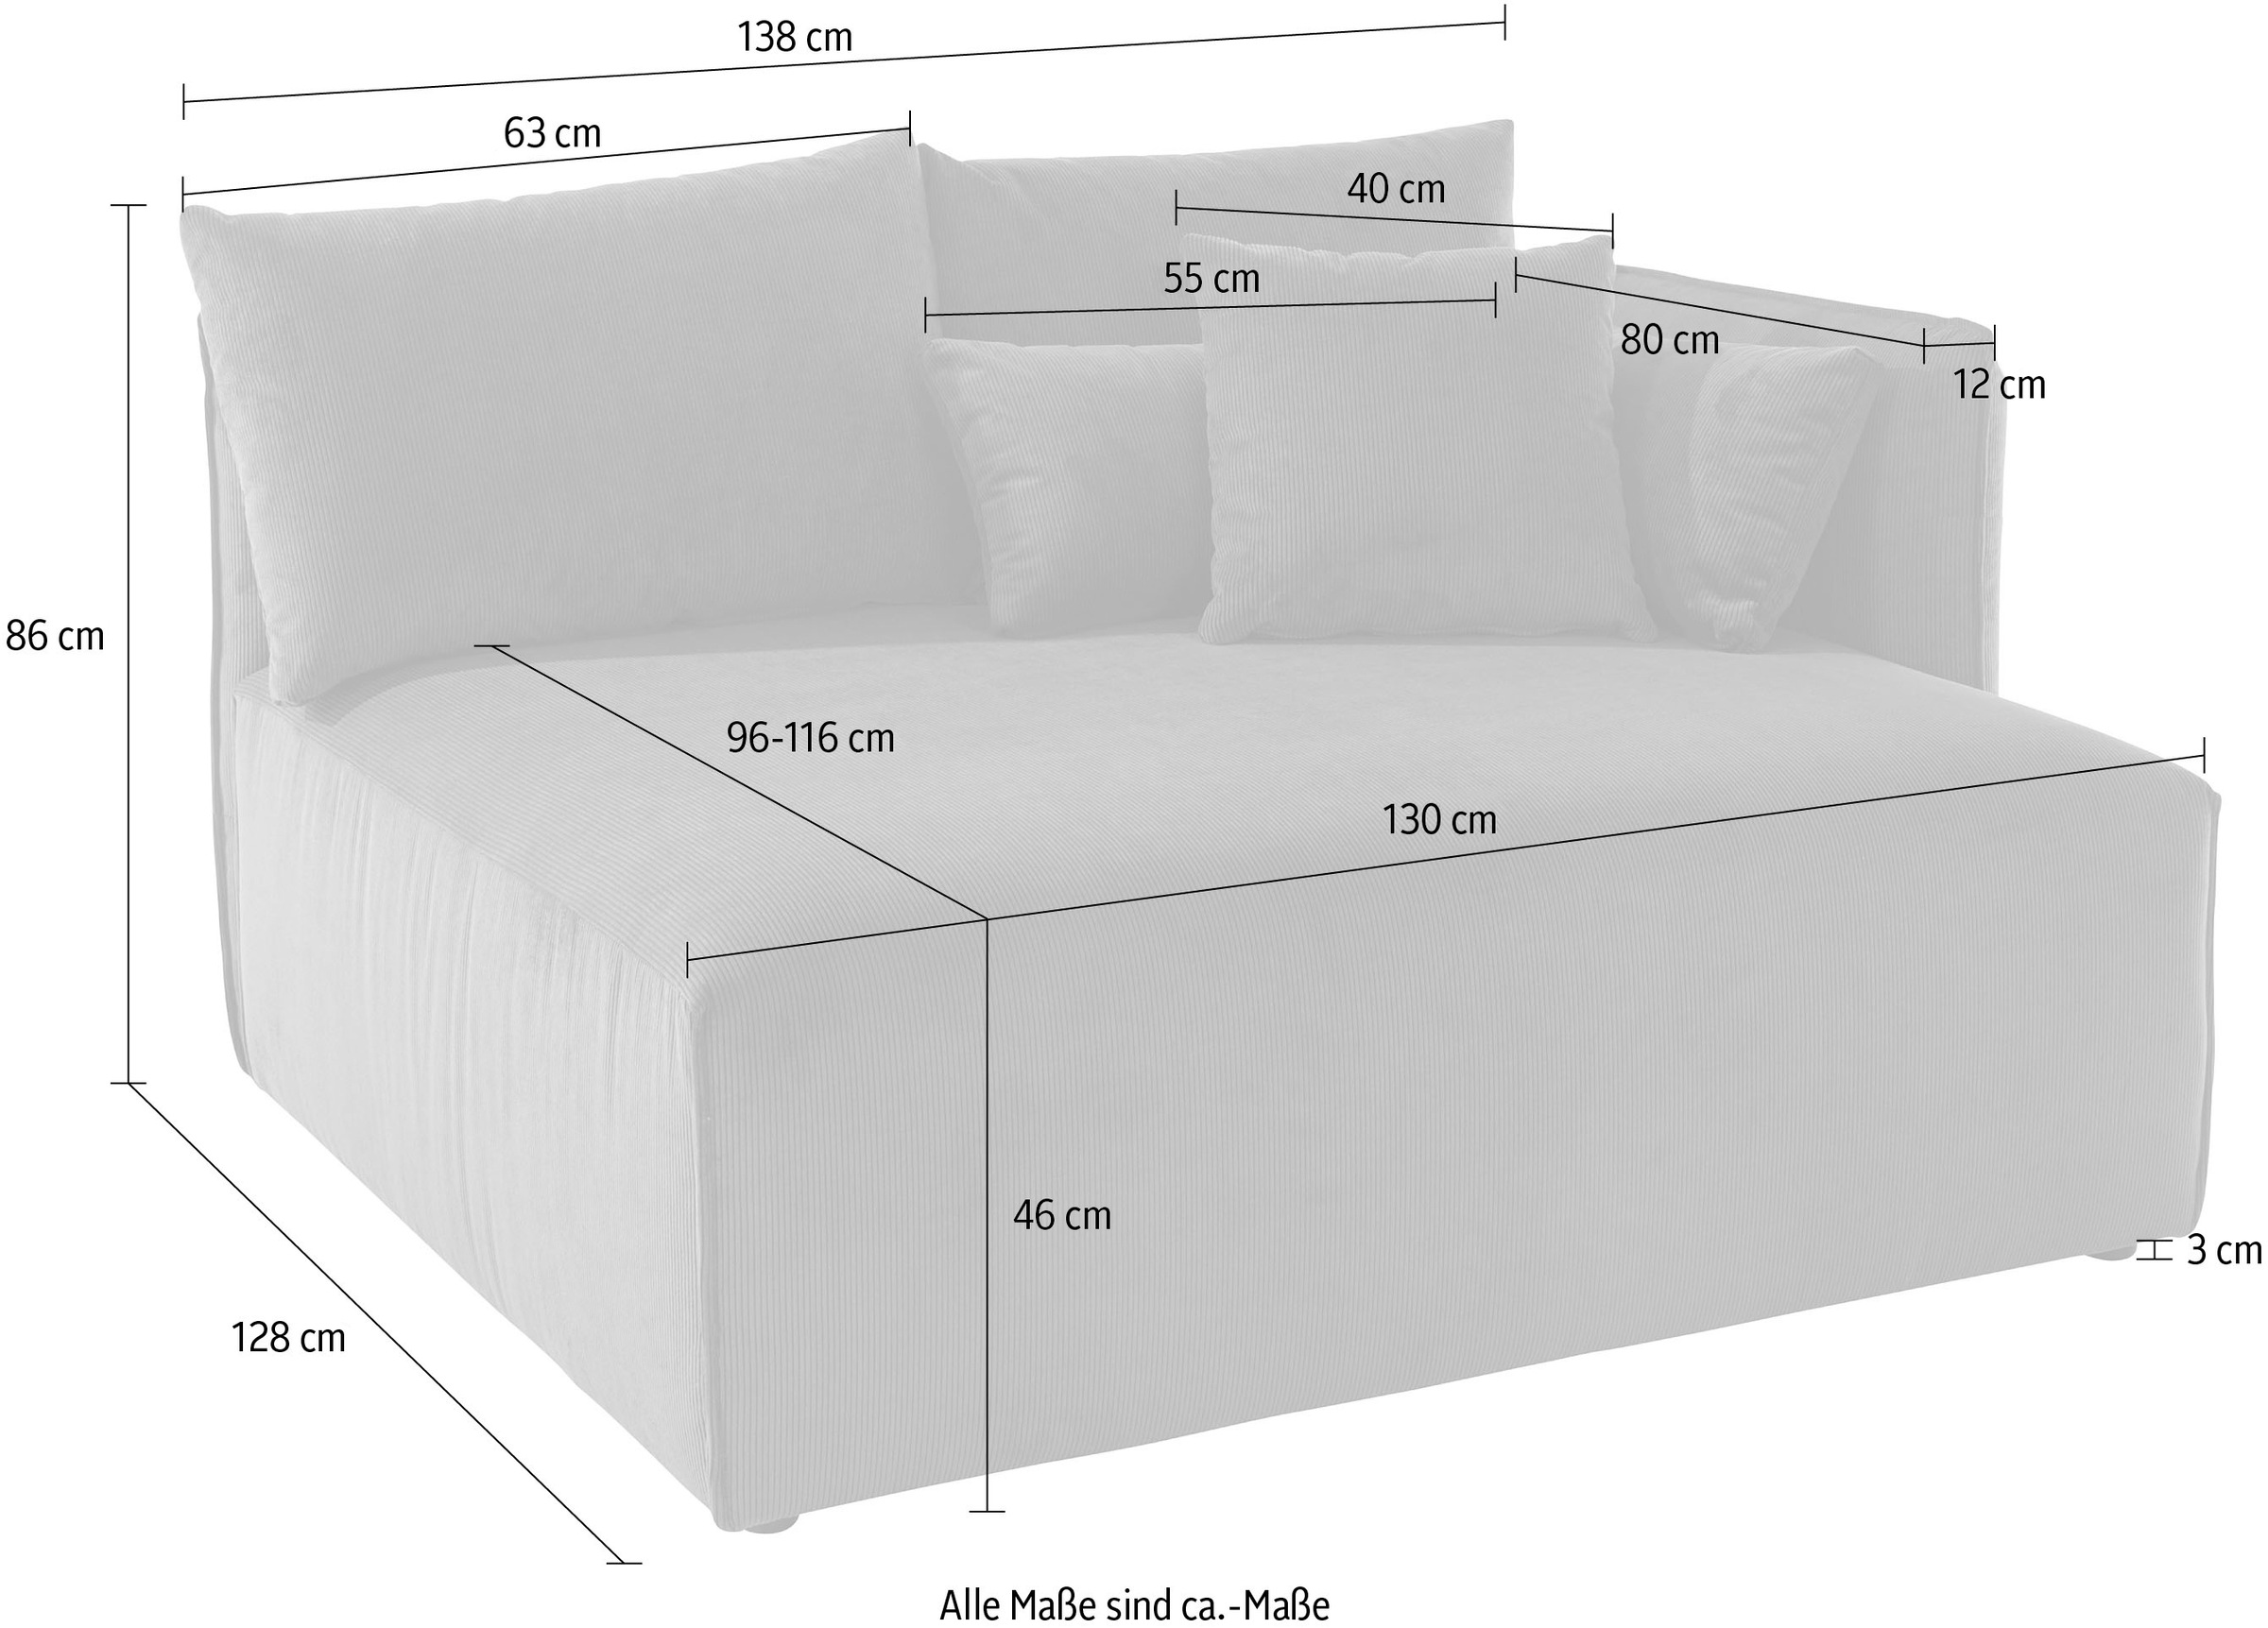 andas Ottomane »Nöre«, kurzes Lounge-Modul - zum Zusammenstellen, Breite 138 cm, Tiefe 128 cm